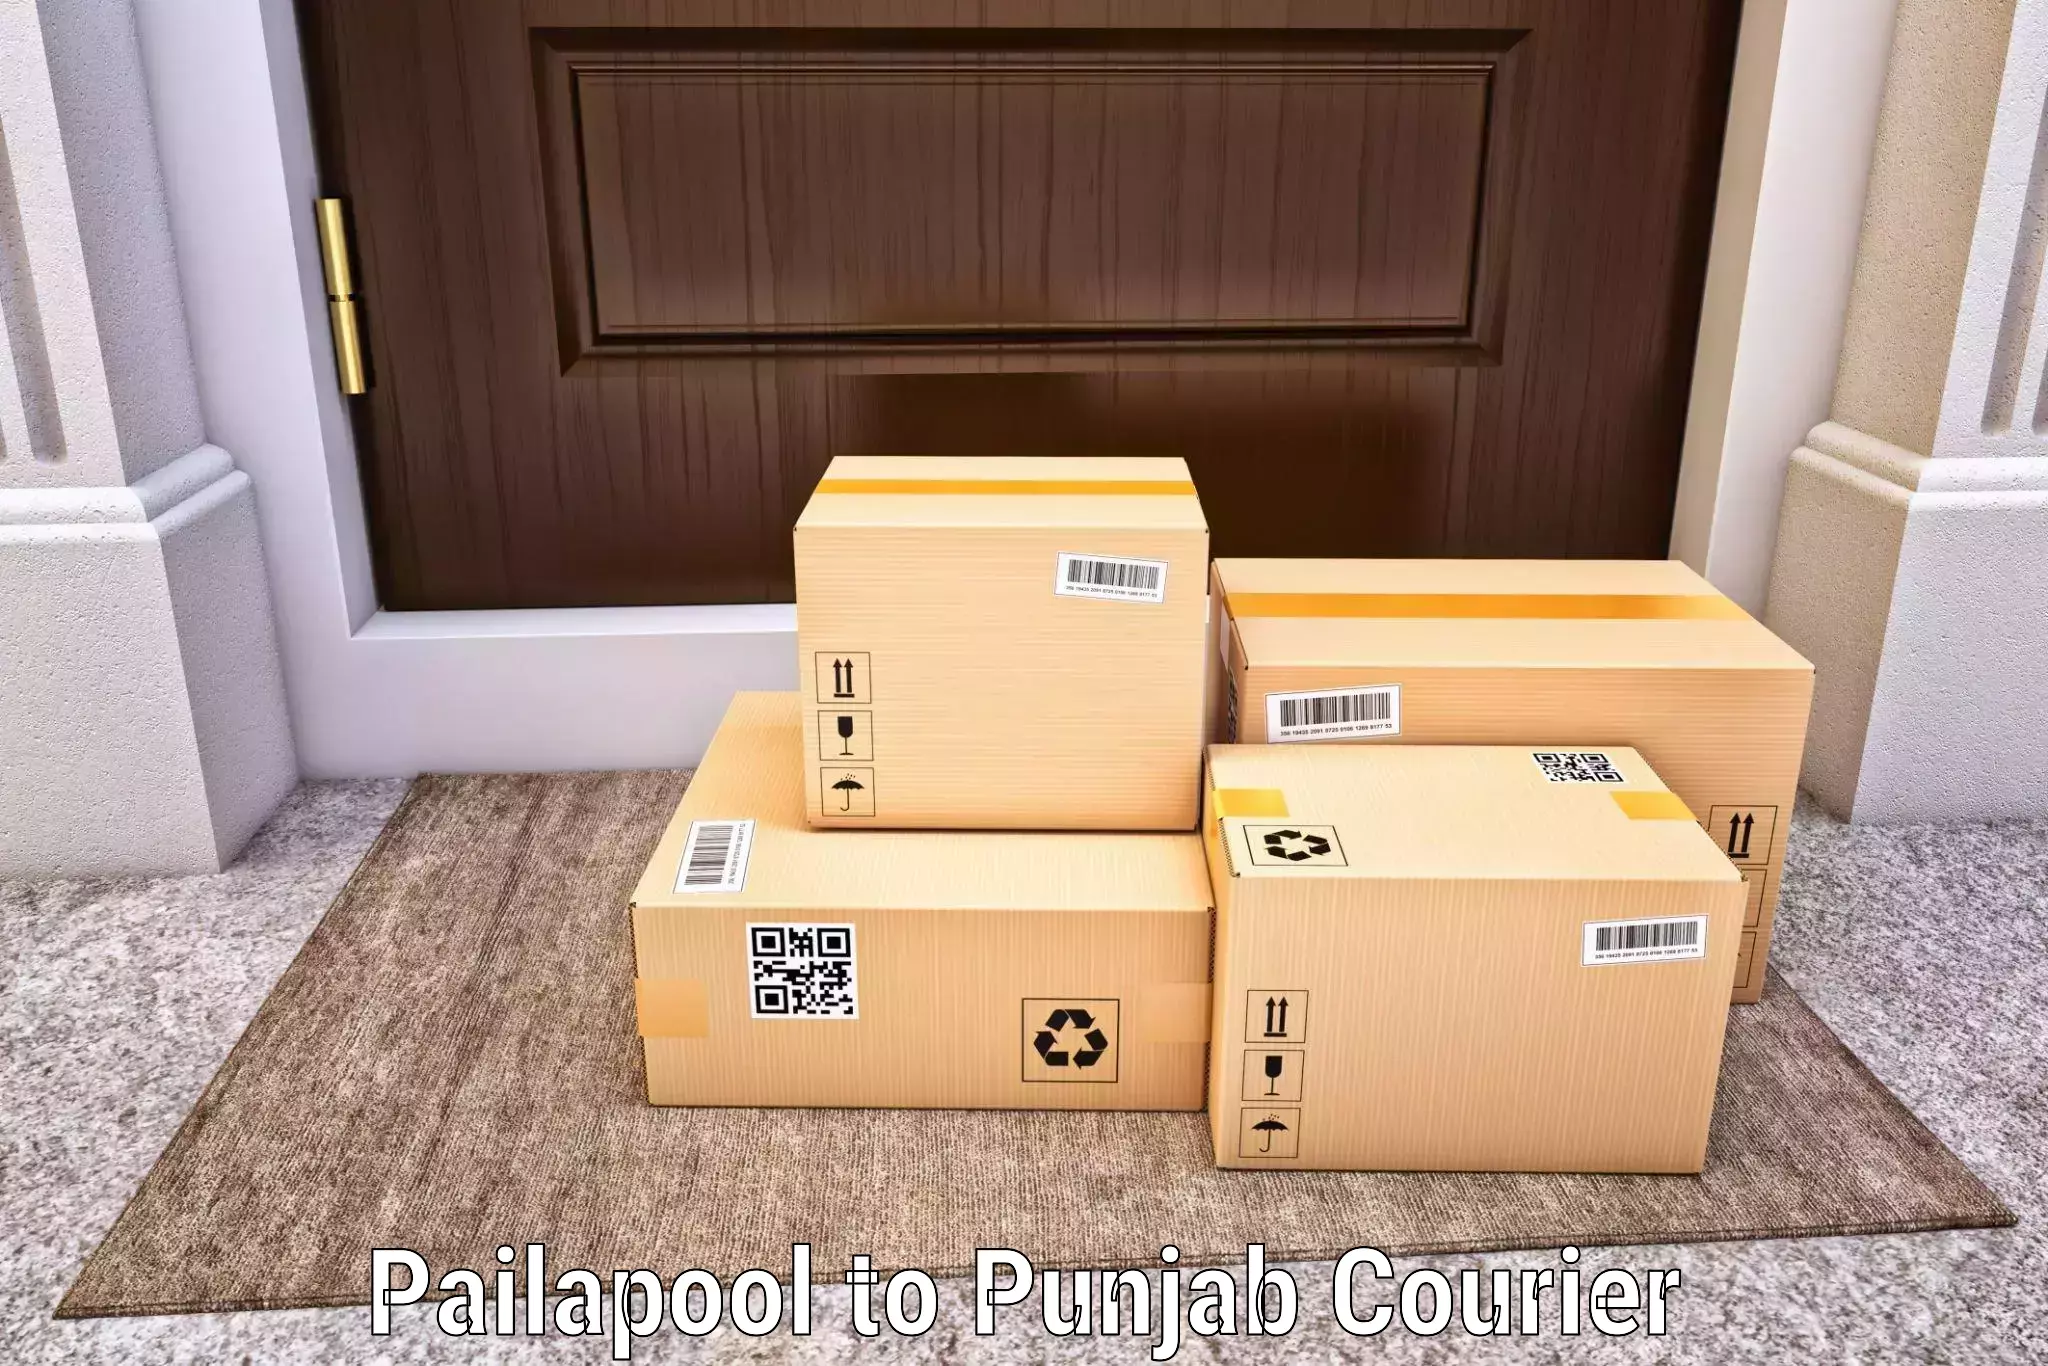 Courier insurance Pailapool to Rajpura